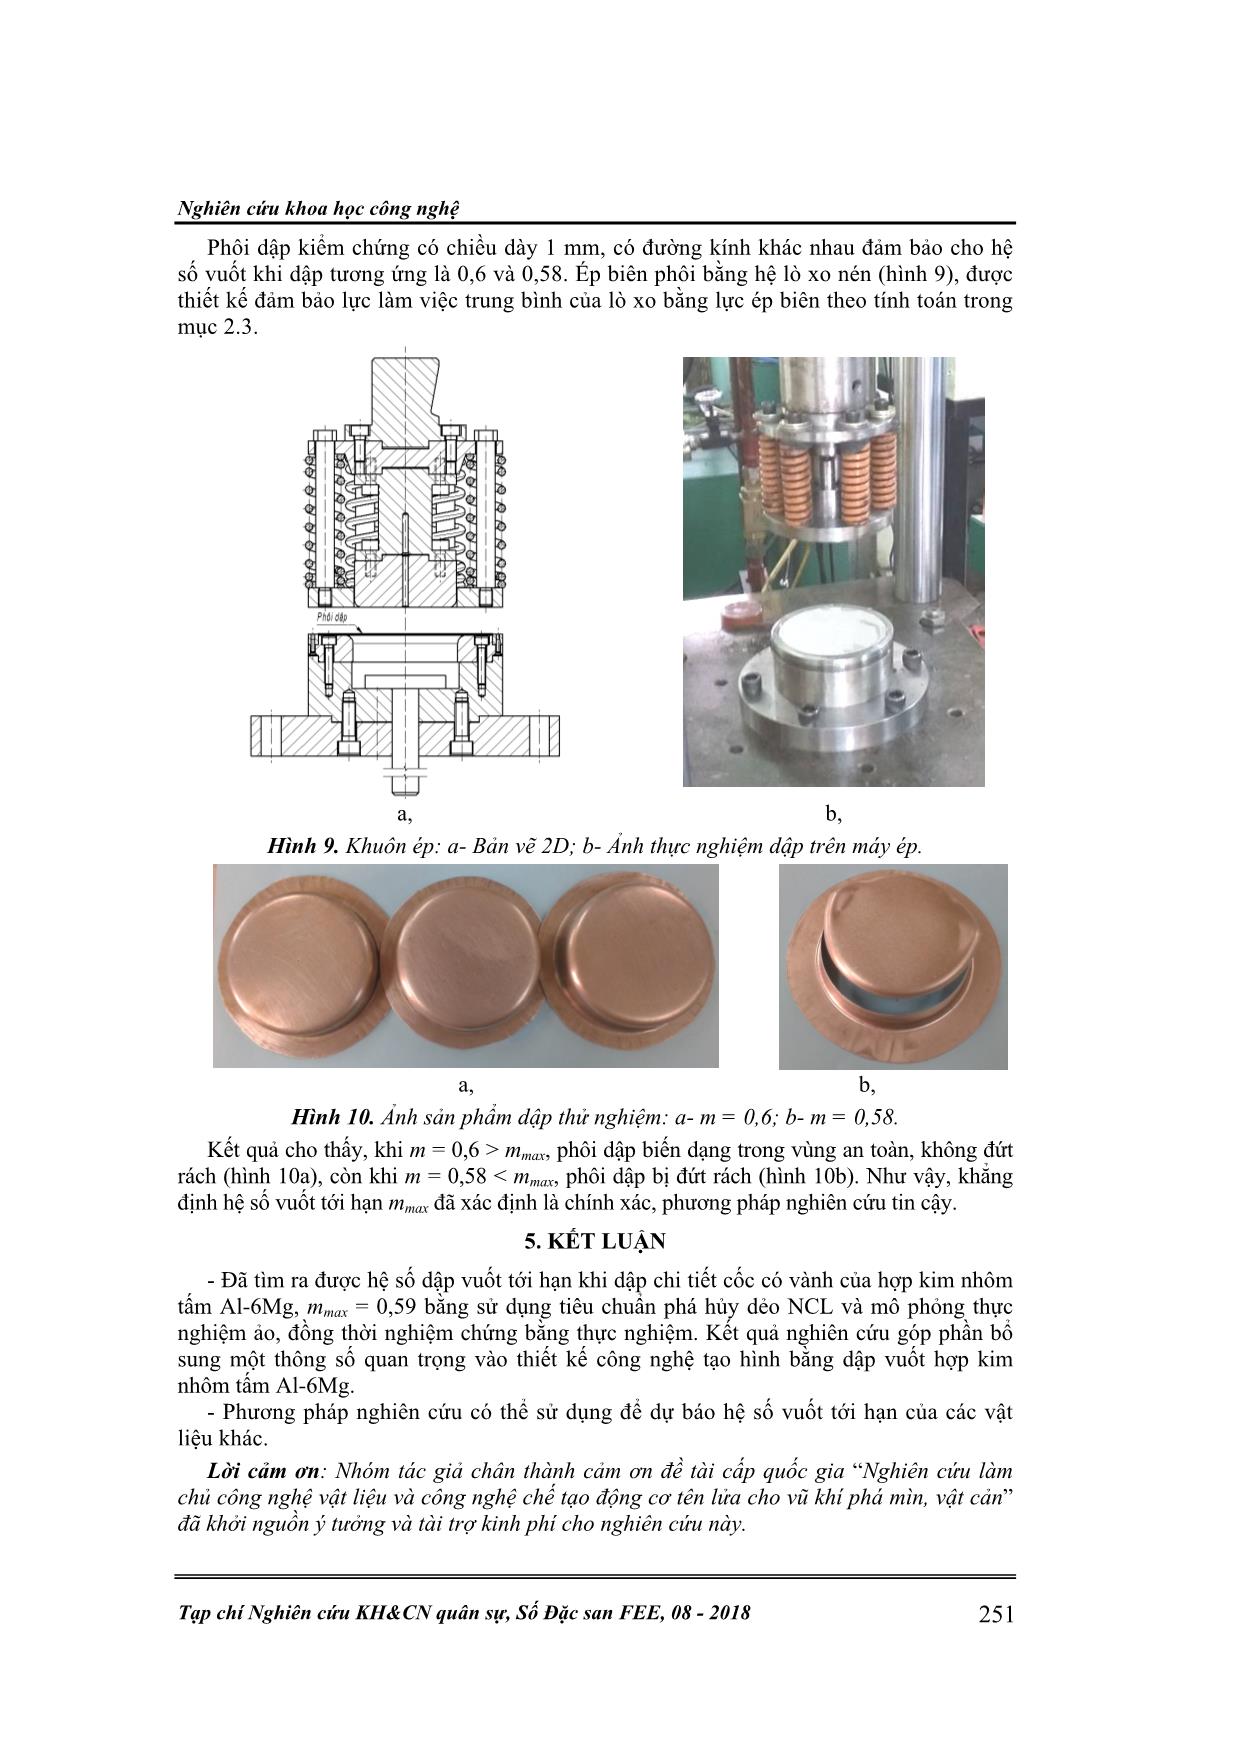 Xác định hệ số vuốt tới hạn khi dập vuốt cốc có vành bằng hợp kim  Al-6Mg trang 5